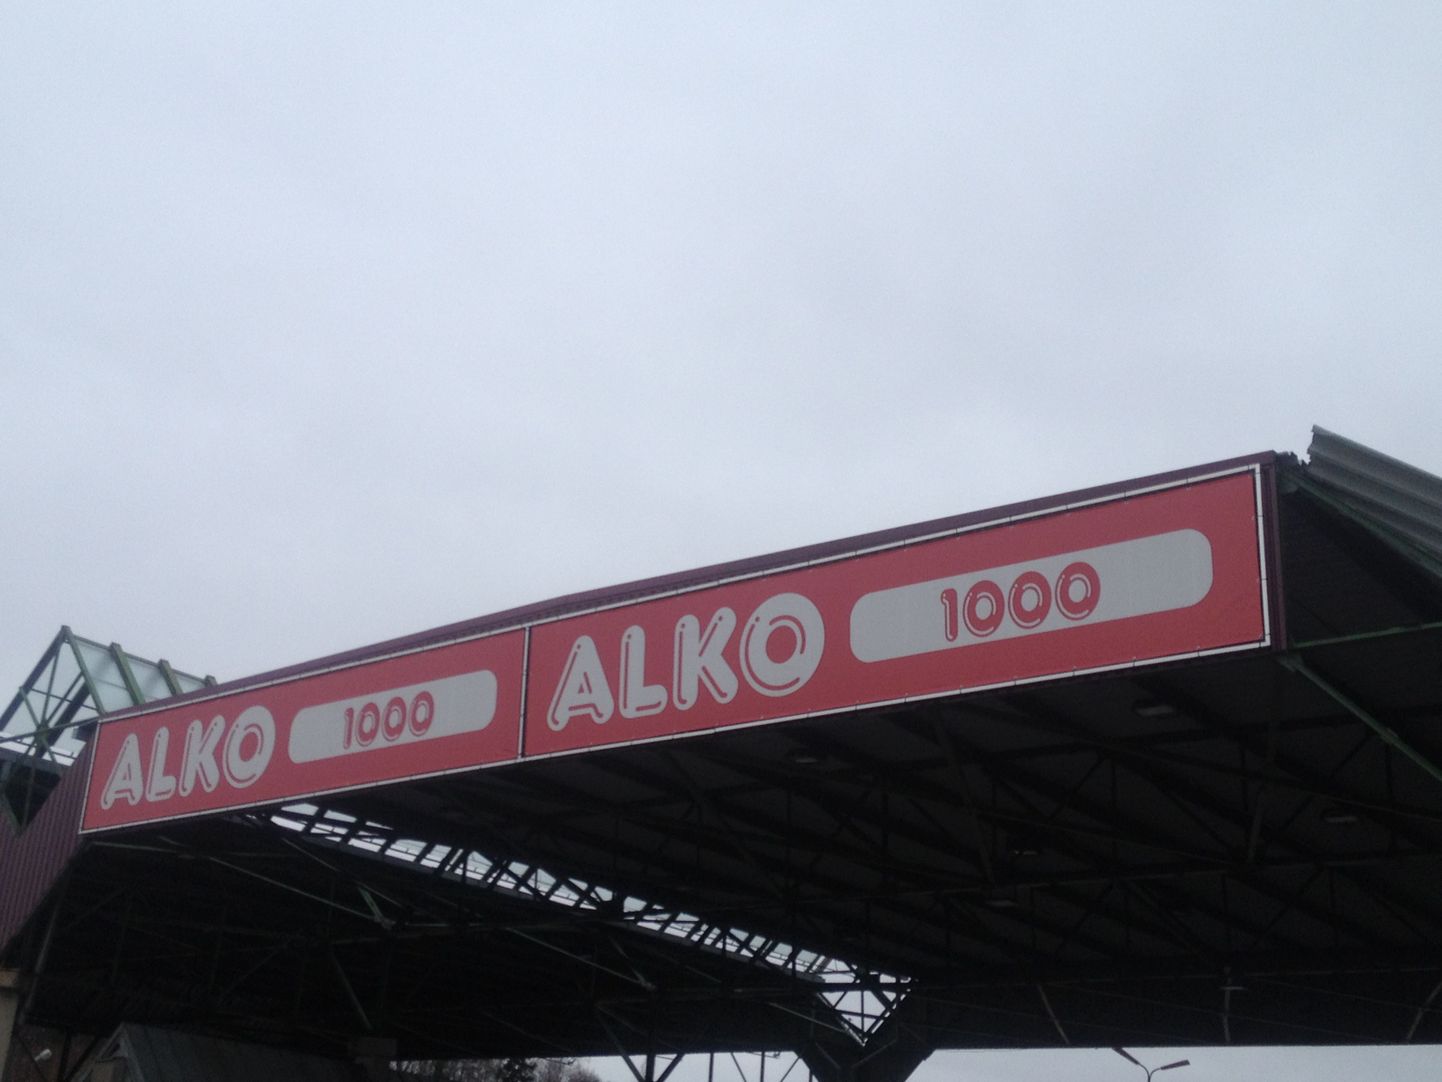 Закомая многие жителям Эстонии торговая сеть Alko1000.